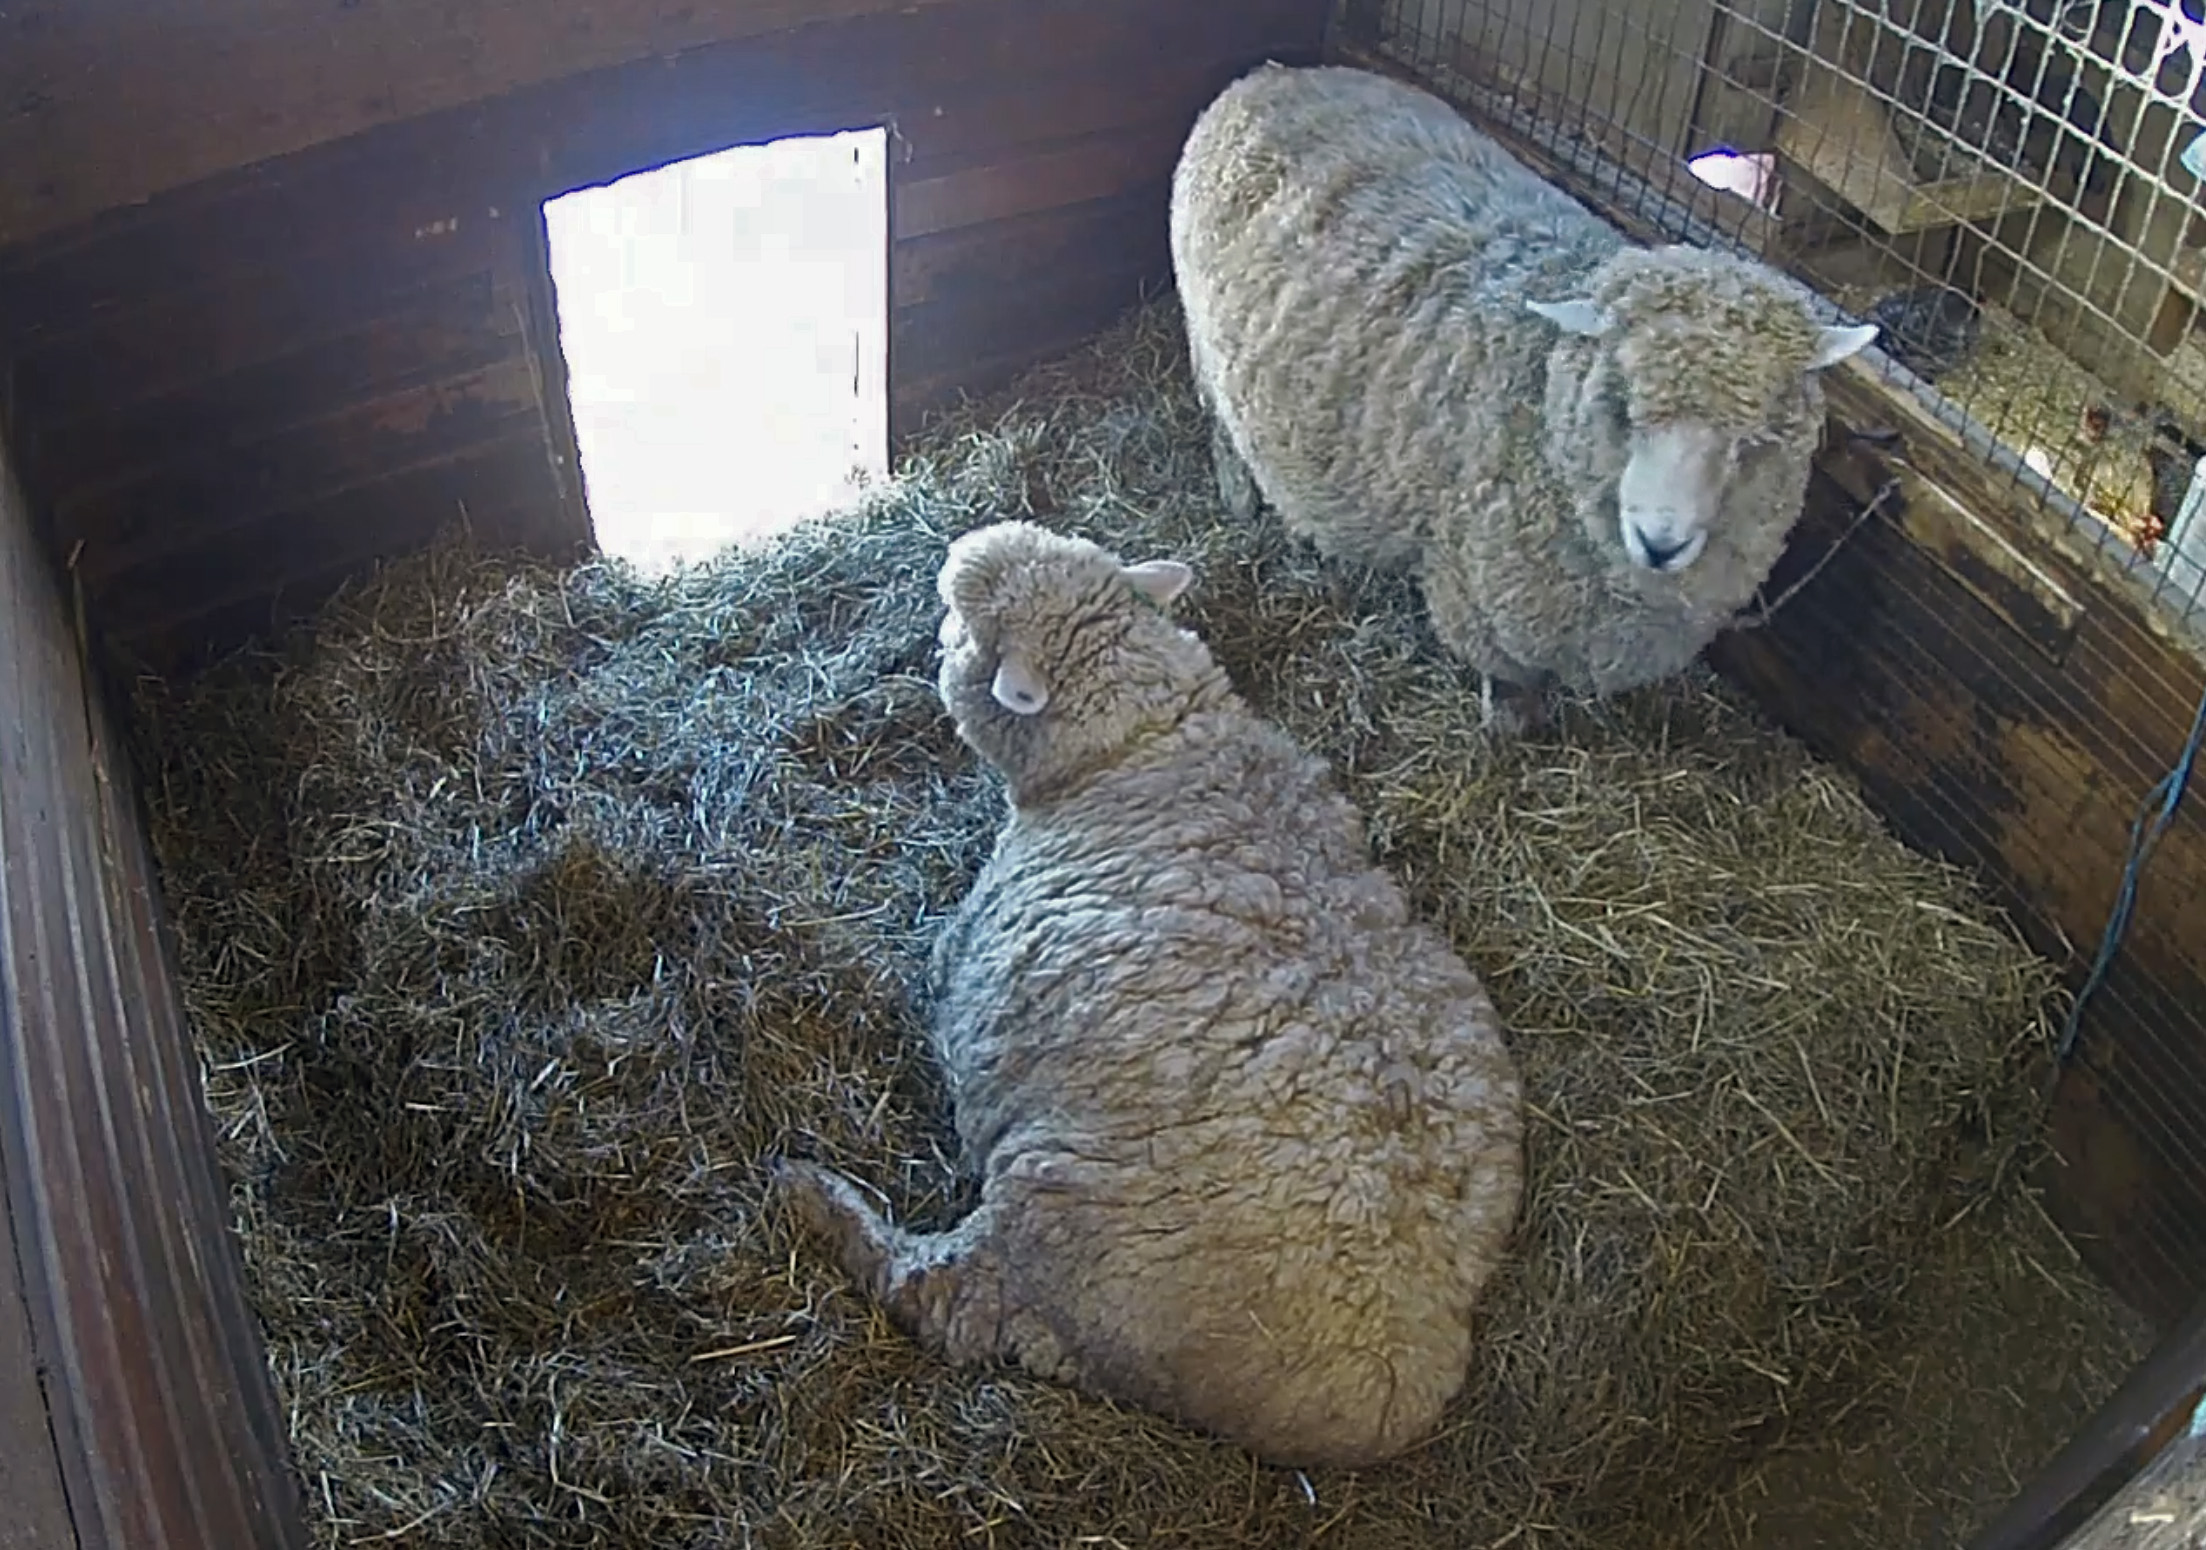 Pregnant Ewes